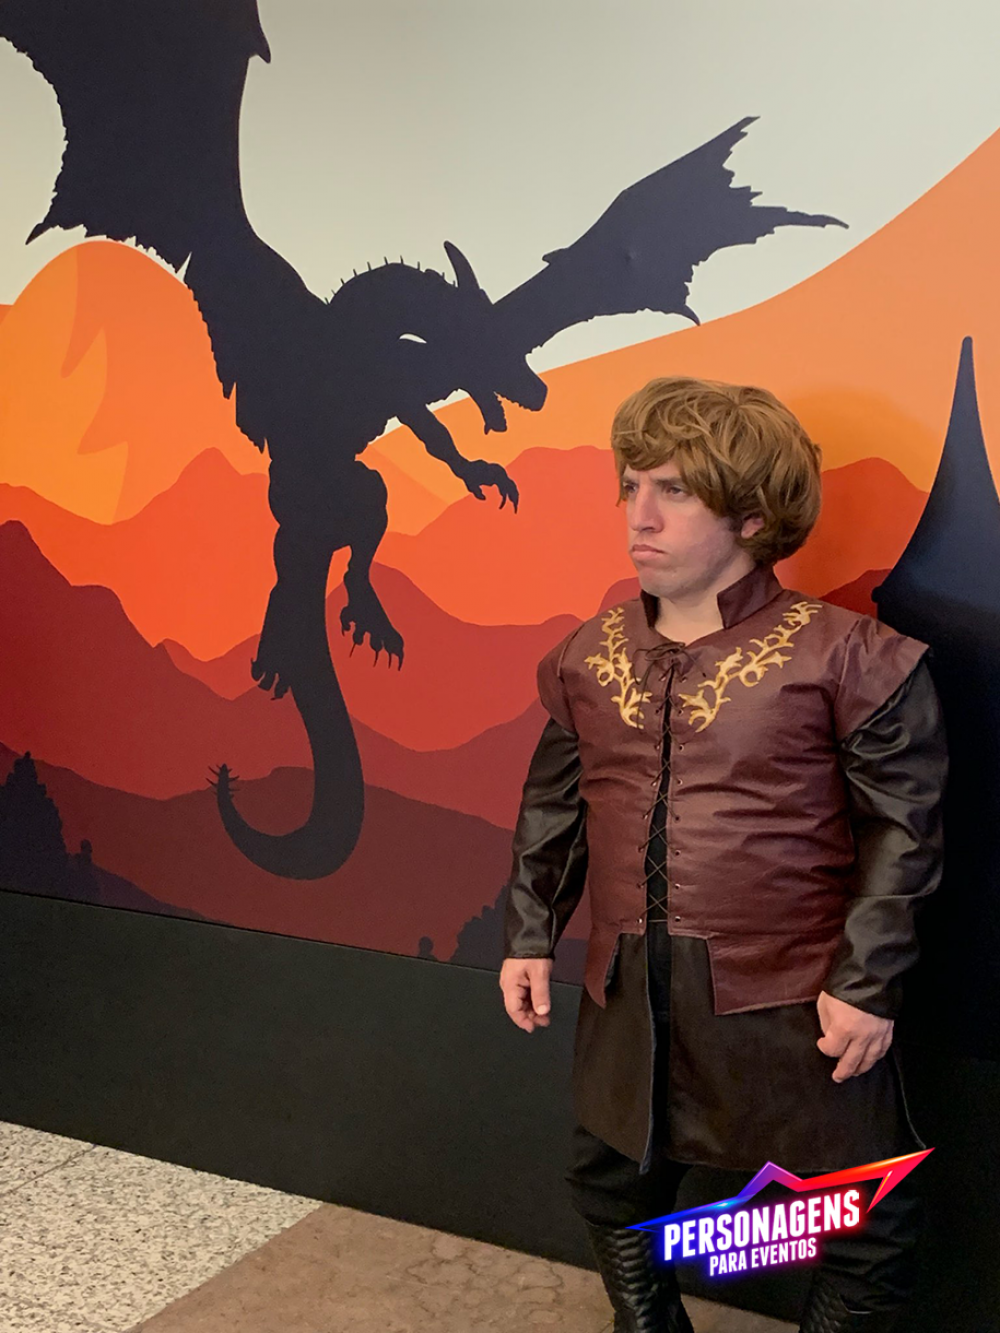 Tyrion Lannister personagens para eventos